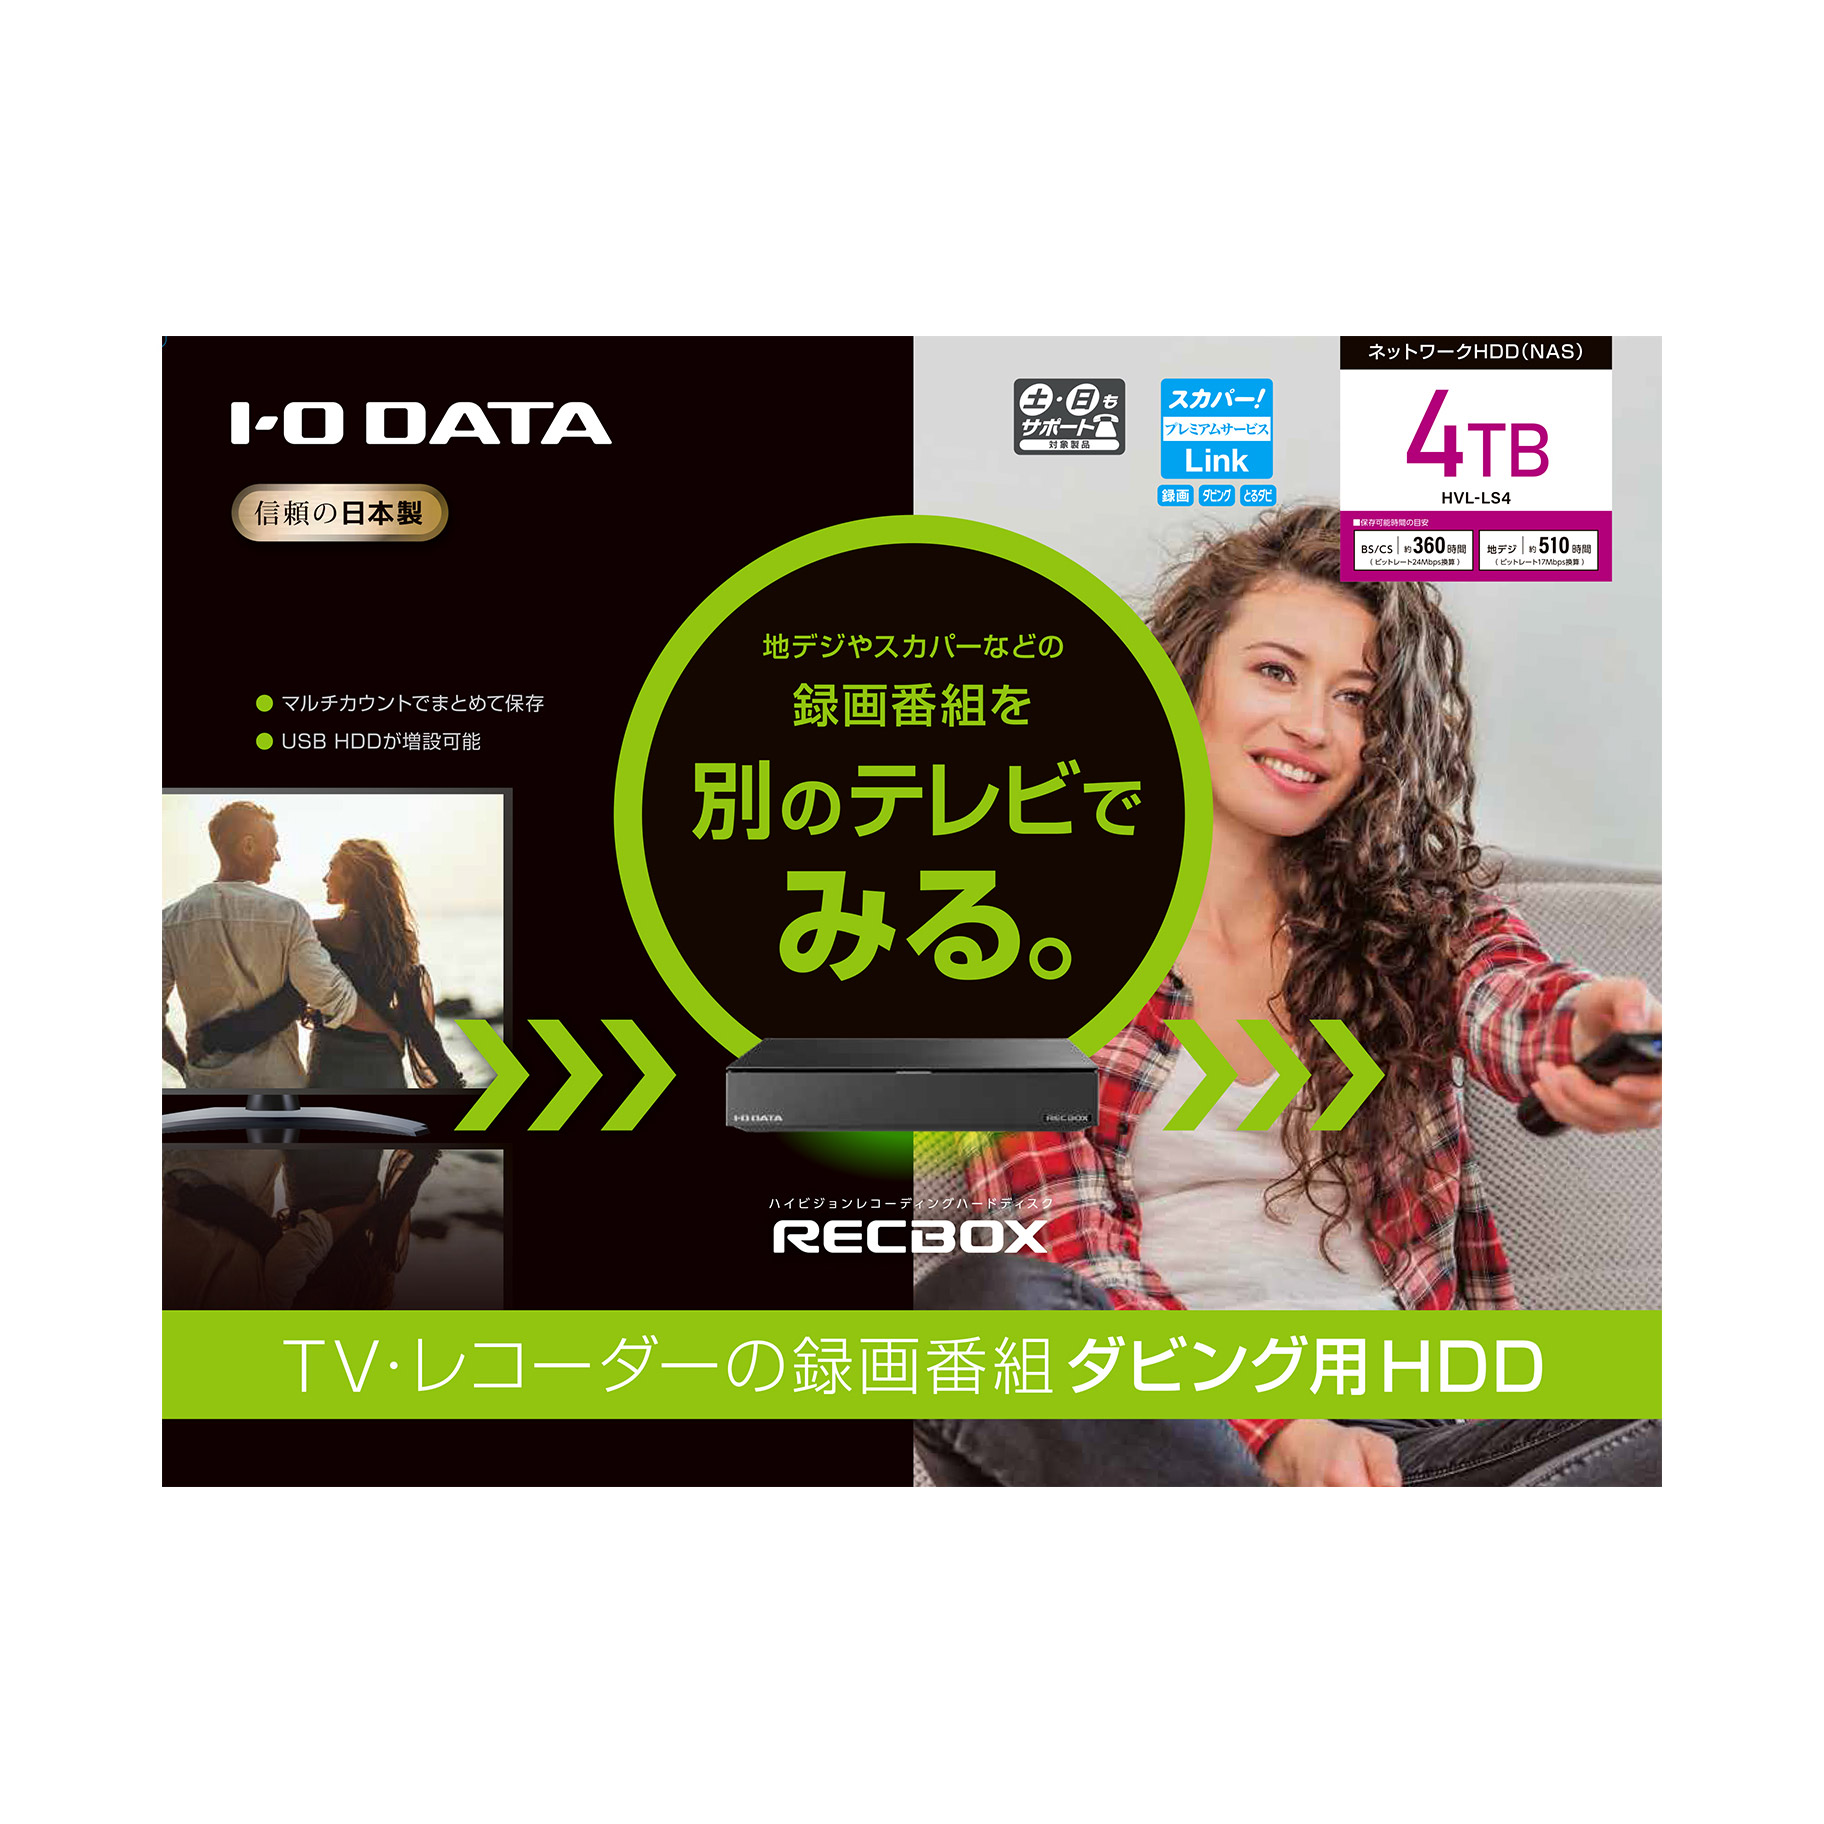 4TB］ハイビジョンレコーディングハードディスク 「RECBOX LS」テレビ